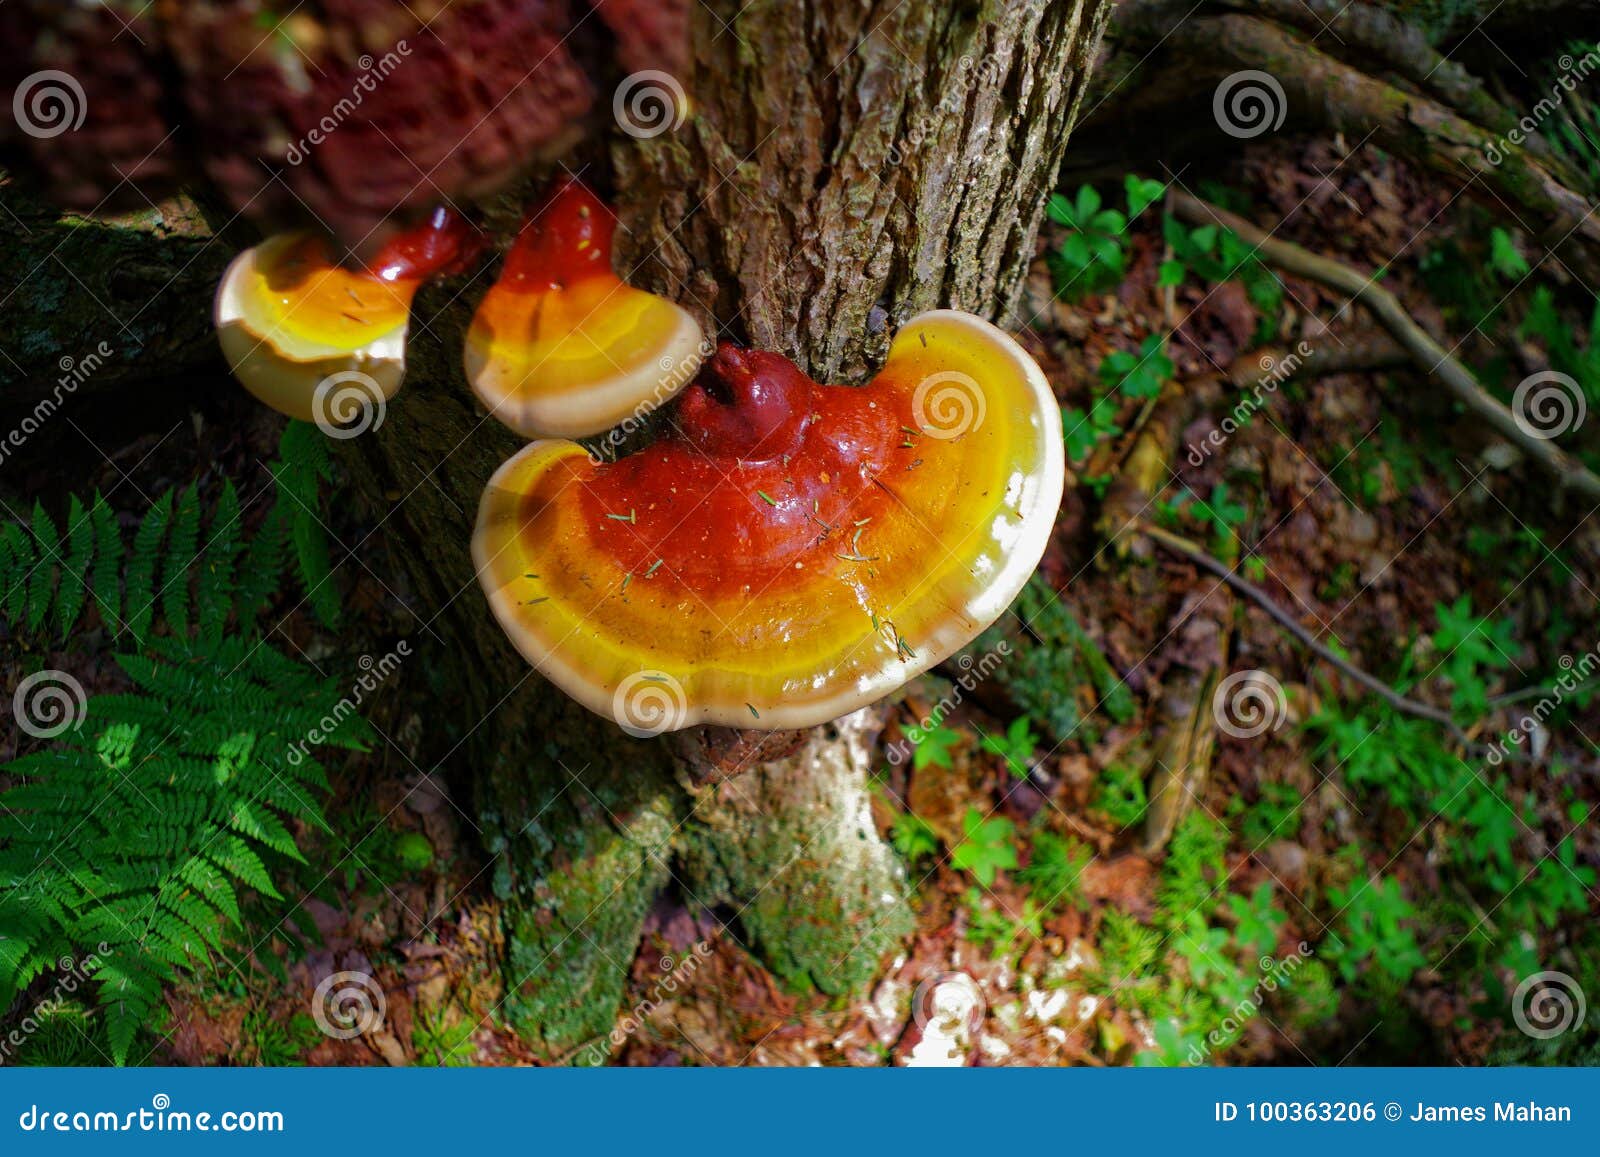 vibrant reishi mushroom in the forest